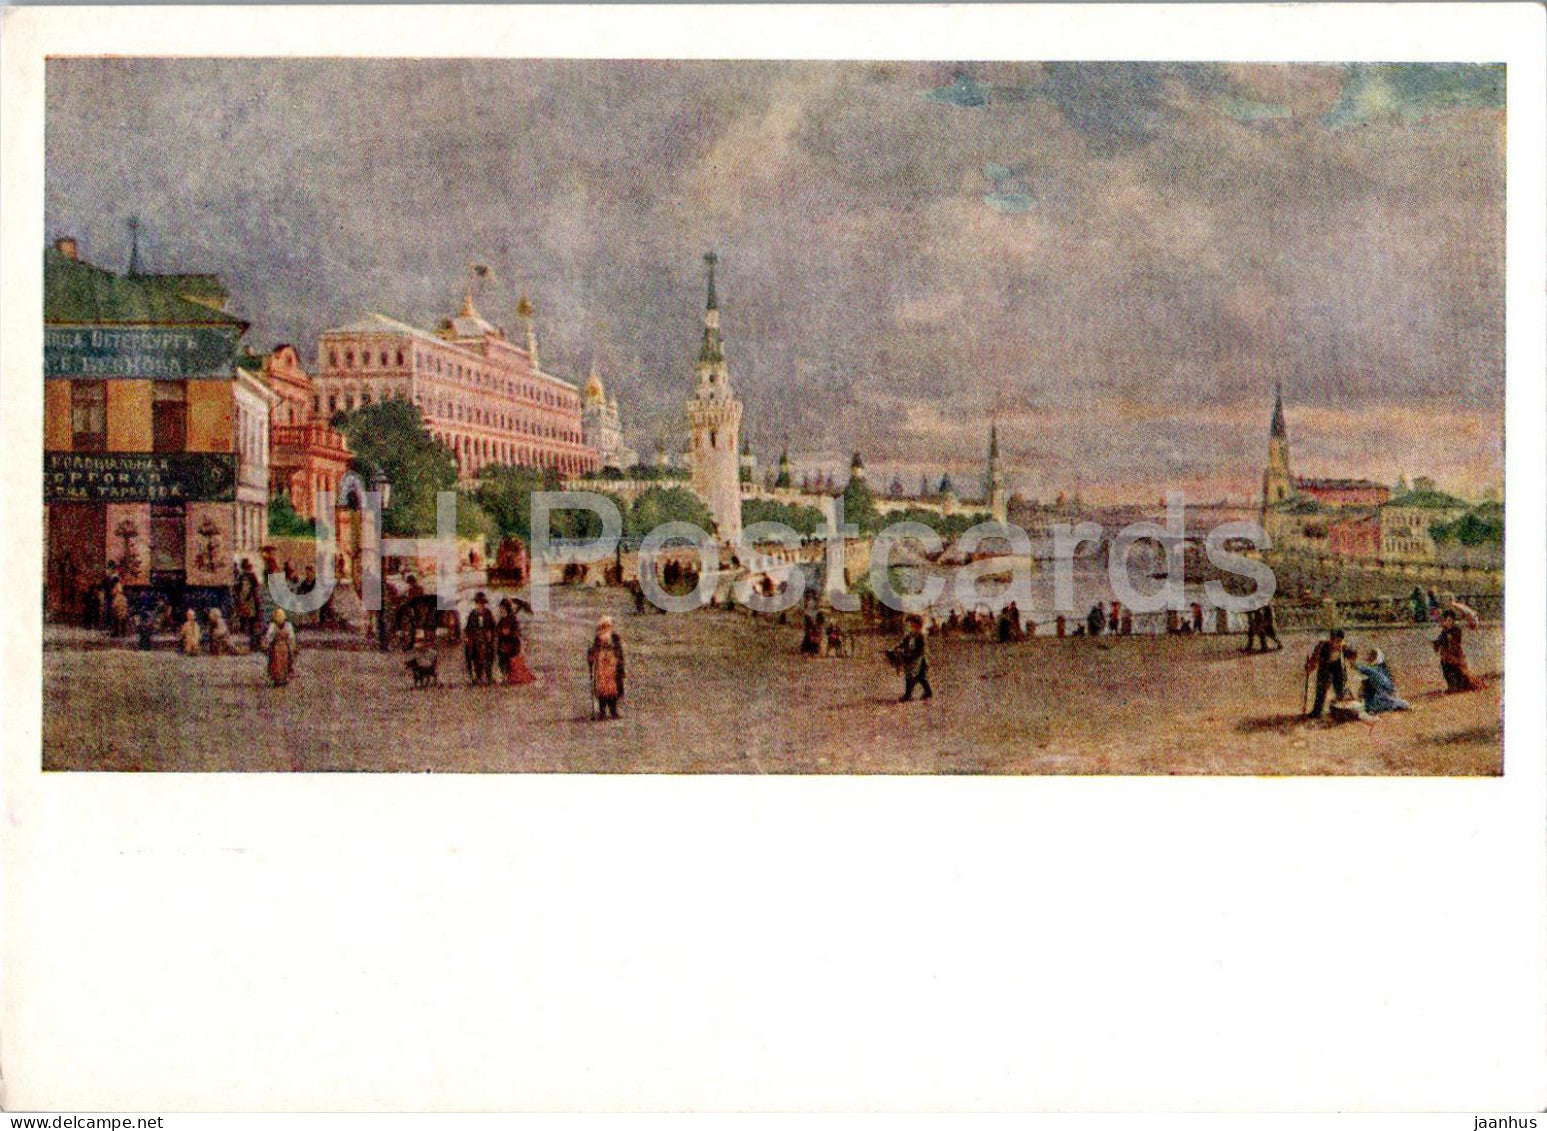 Moscow Kremlin - In 1868 - illustration by V. Vereshchagin - 1962 - Russia USSR - unused - JH Postcards